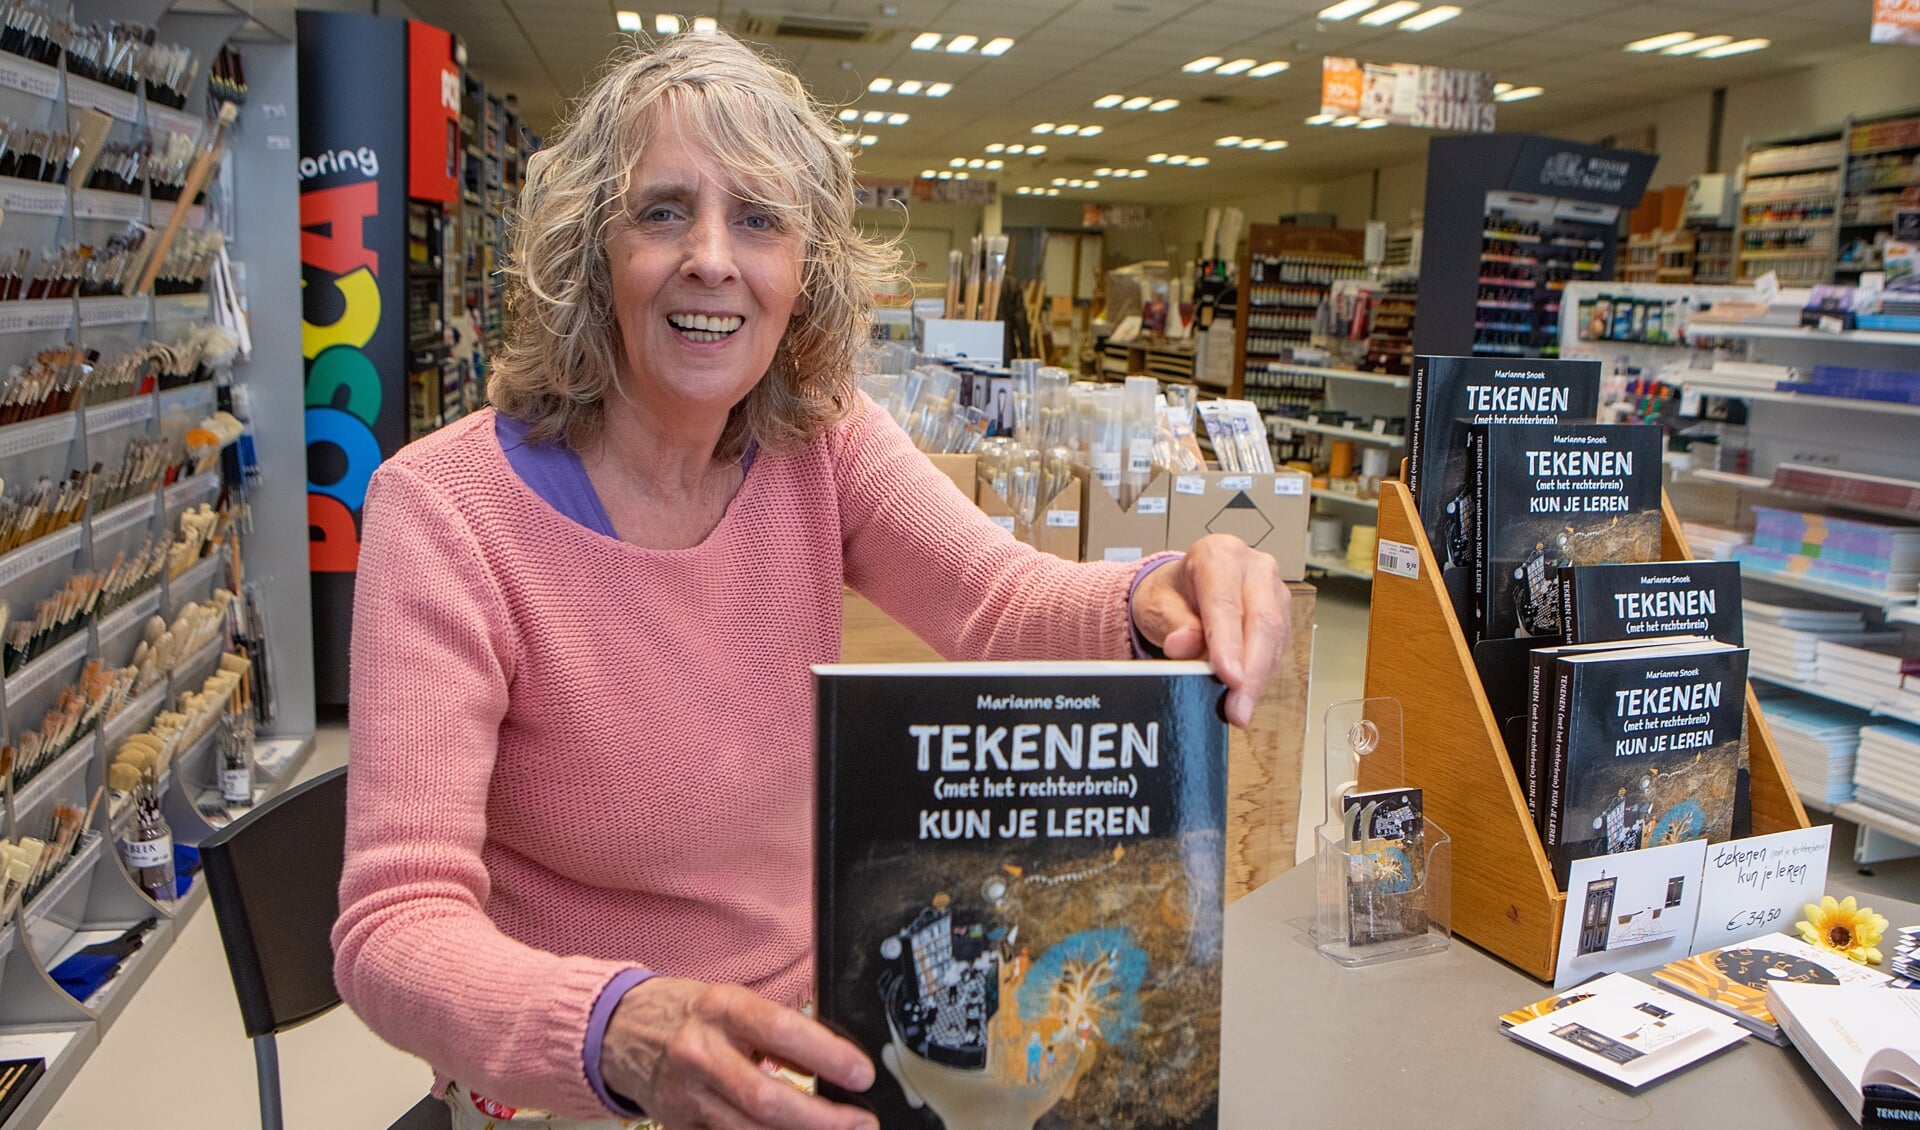 Snoeks boek is onder meer te koop bij Van Beek Art Supplies in Bussum. Daar hield ze eerder deze maand ook een signeersessie.